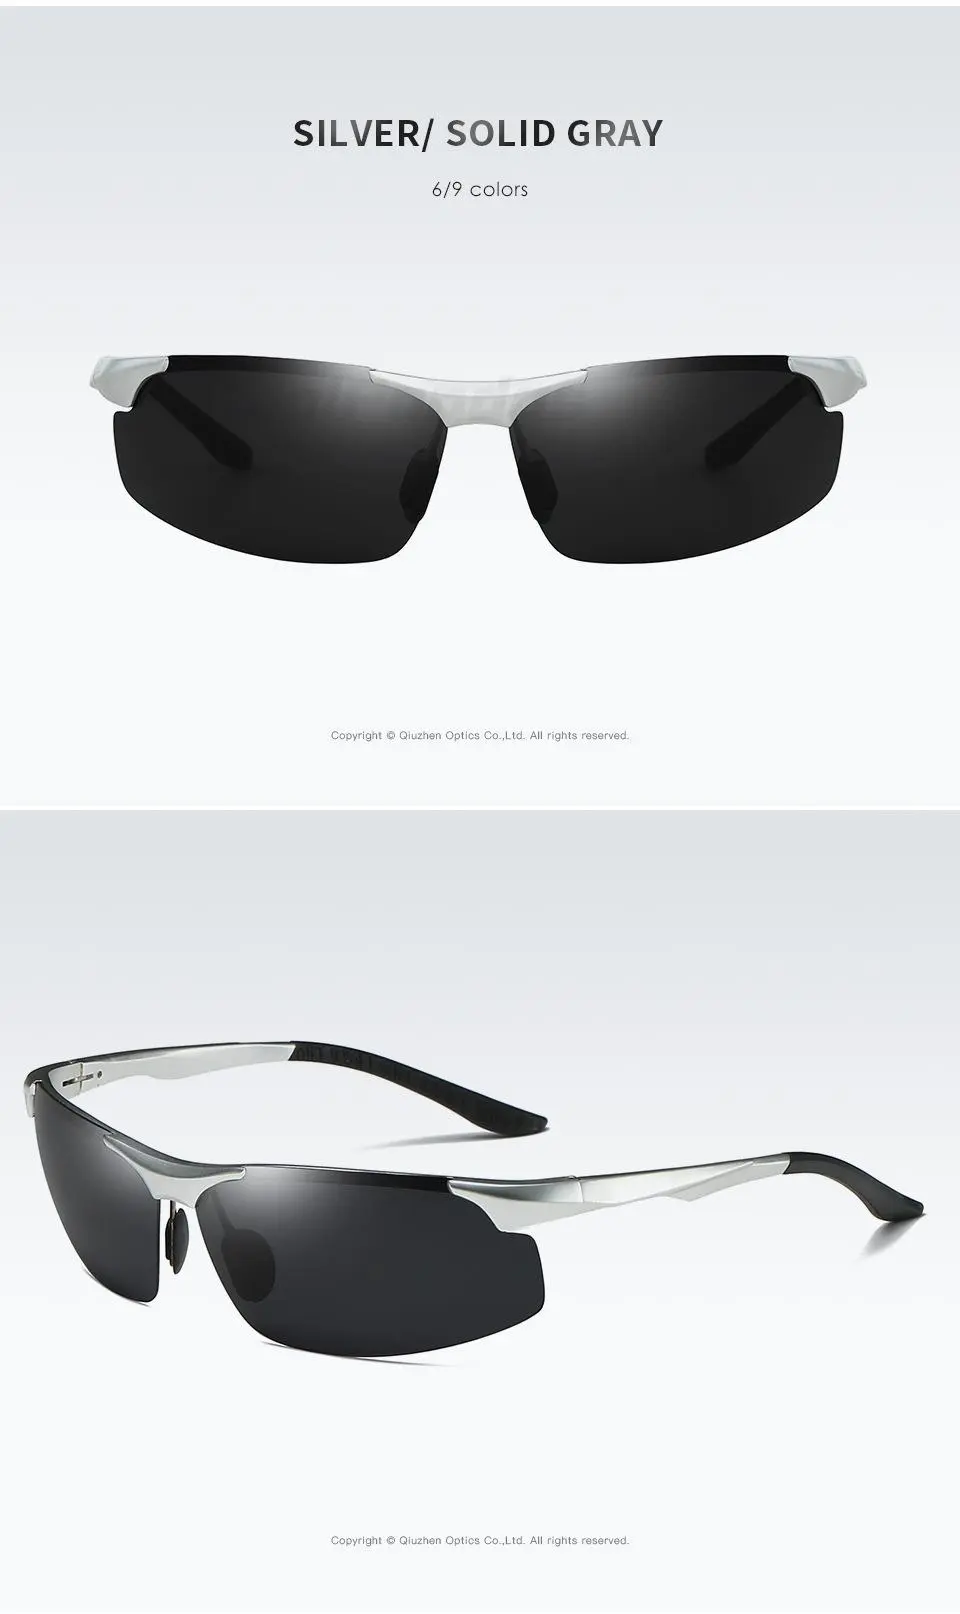 Gafas de sol fotocromáticas polarizadas HD de aluminio para hombre, gafas de sol masculinas para conducir, gafas deportivas para exteriores, gafas Anti-UV